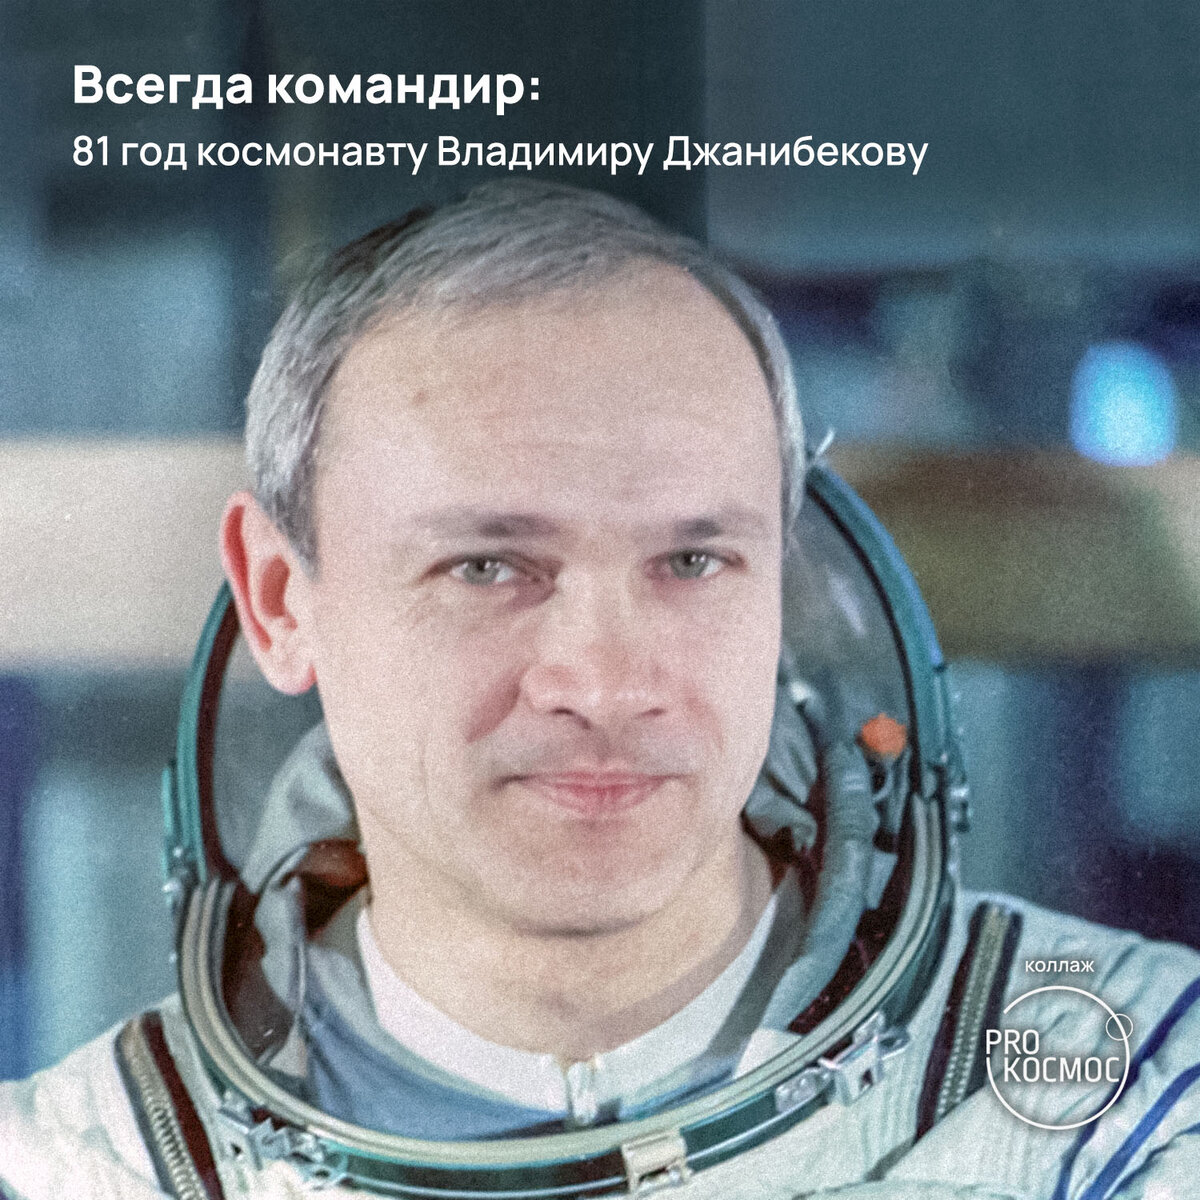 13 мая 1942 года родился Владимир Джанибеков — лётчик-космонавт СССР, дважды Герой Советского Союза.